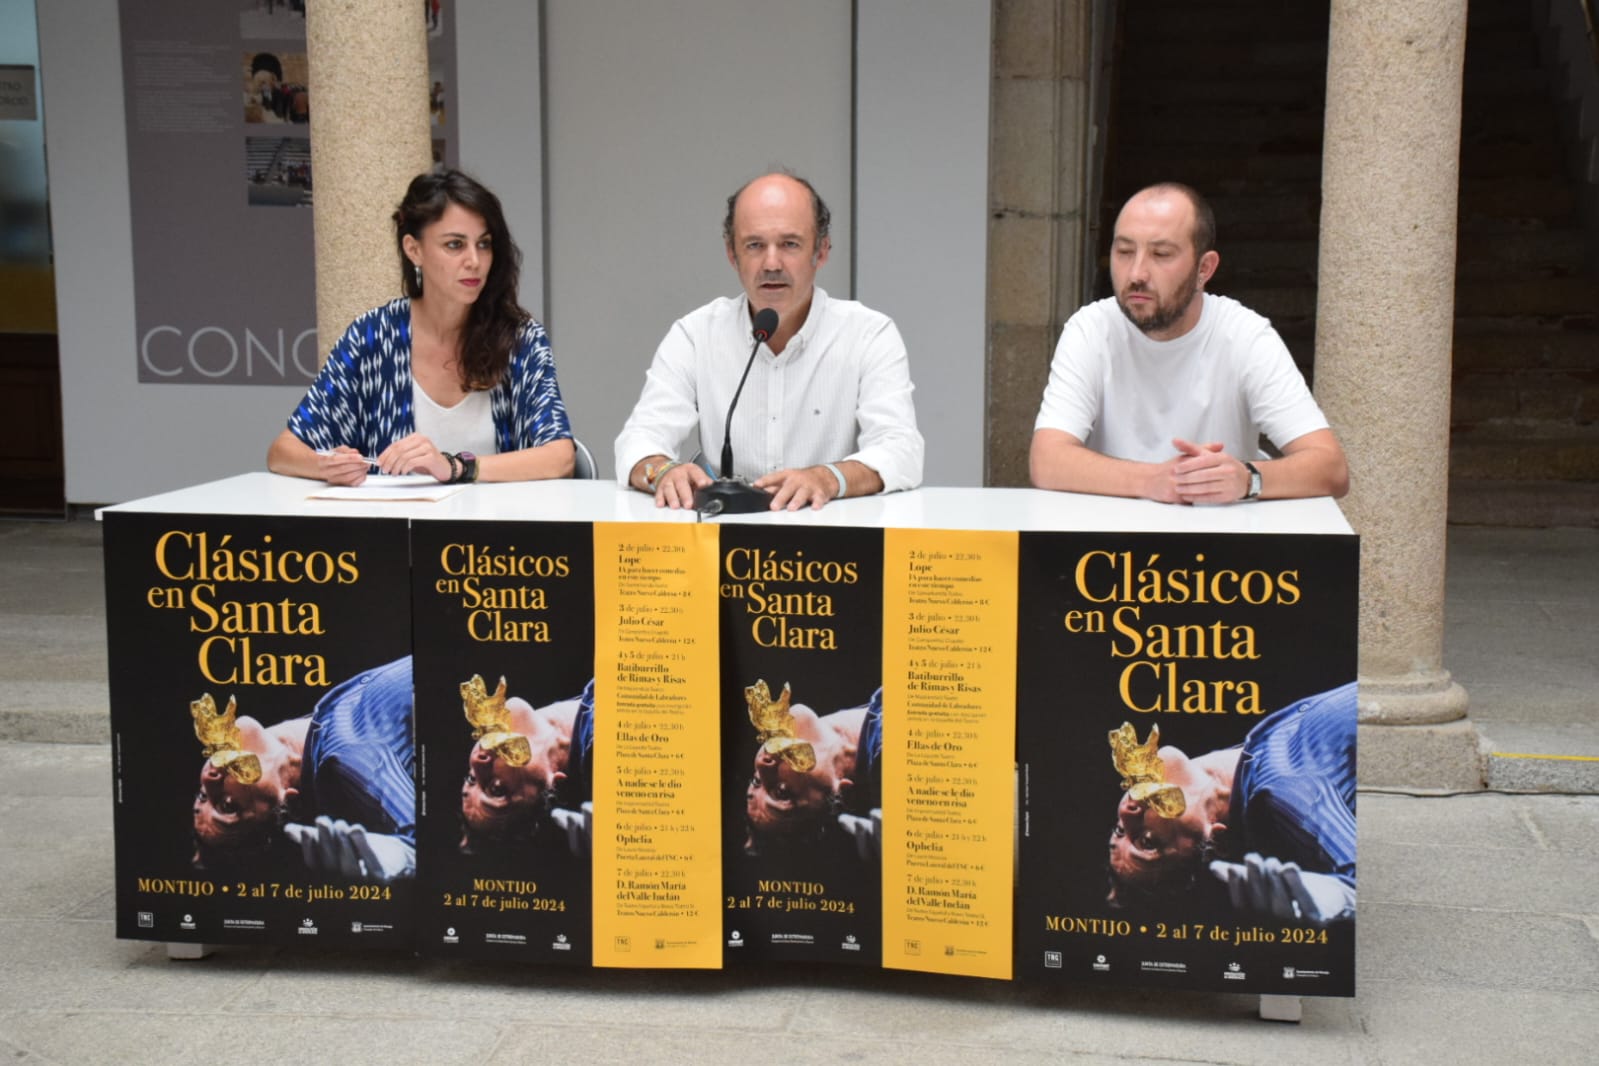 Image 0 of article Siete representaciones teatrales conforman el Festival 'Clásicos en Santa Clara' de Montijo